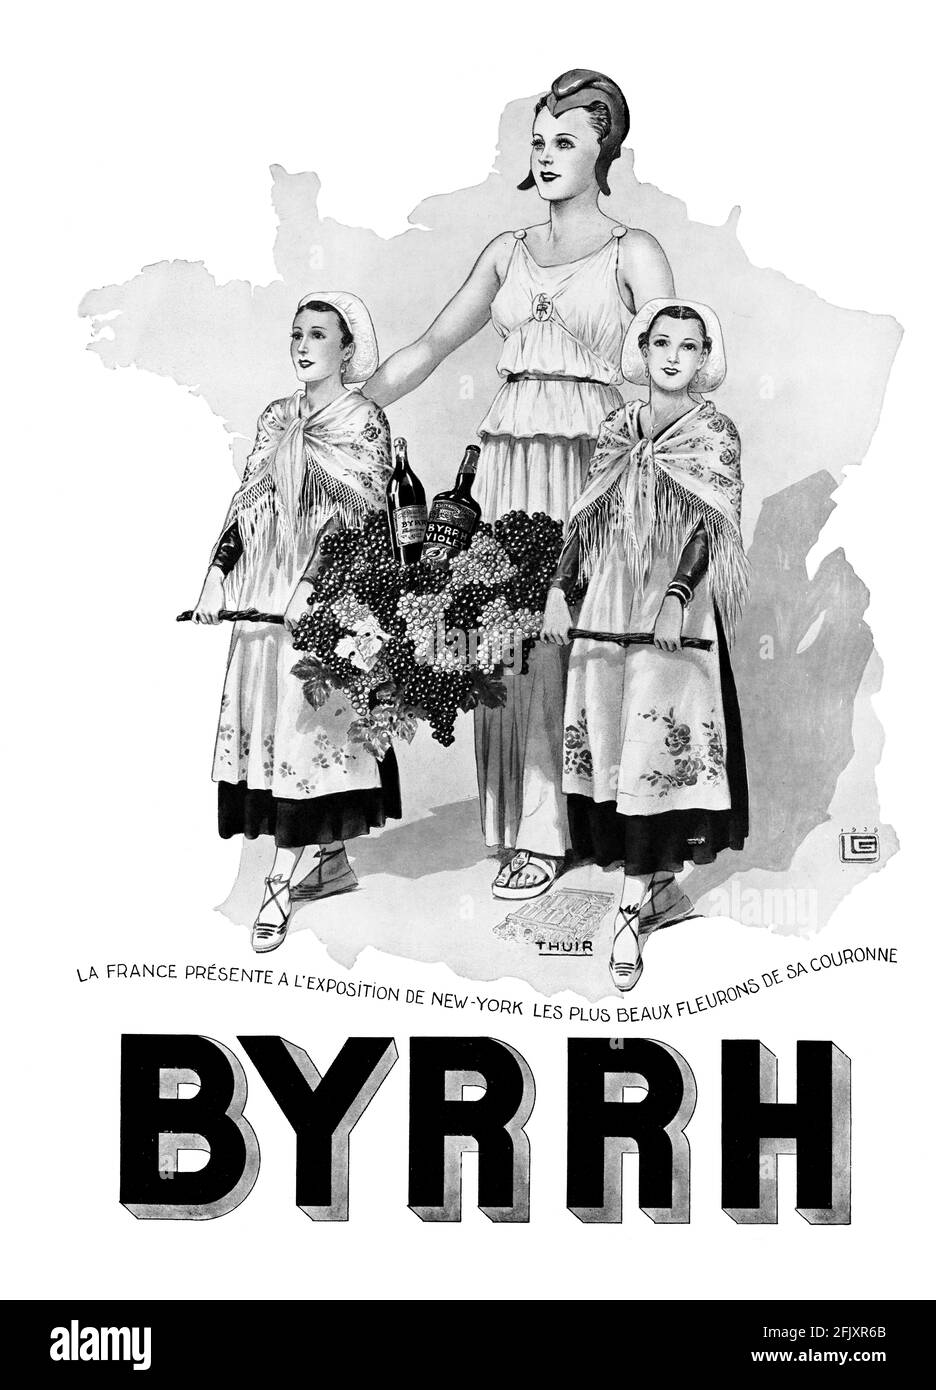 Publicité « Byrh » Vintage French Wine apéritif (qualité poster A3+, 600 dpi) Banque D'Images